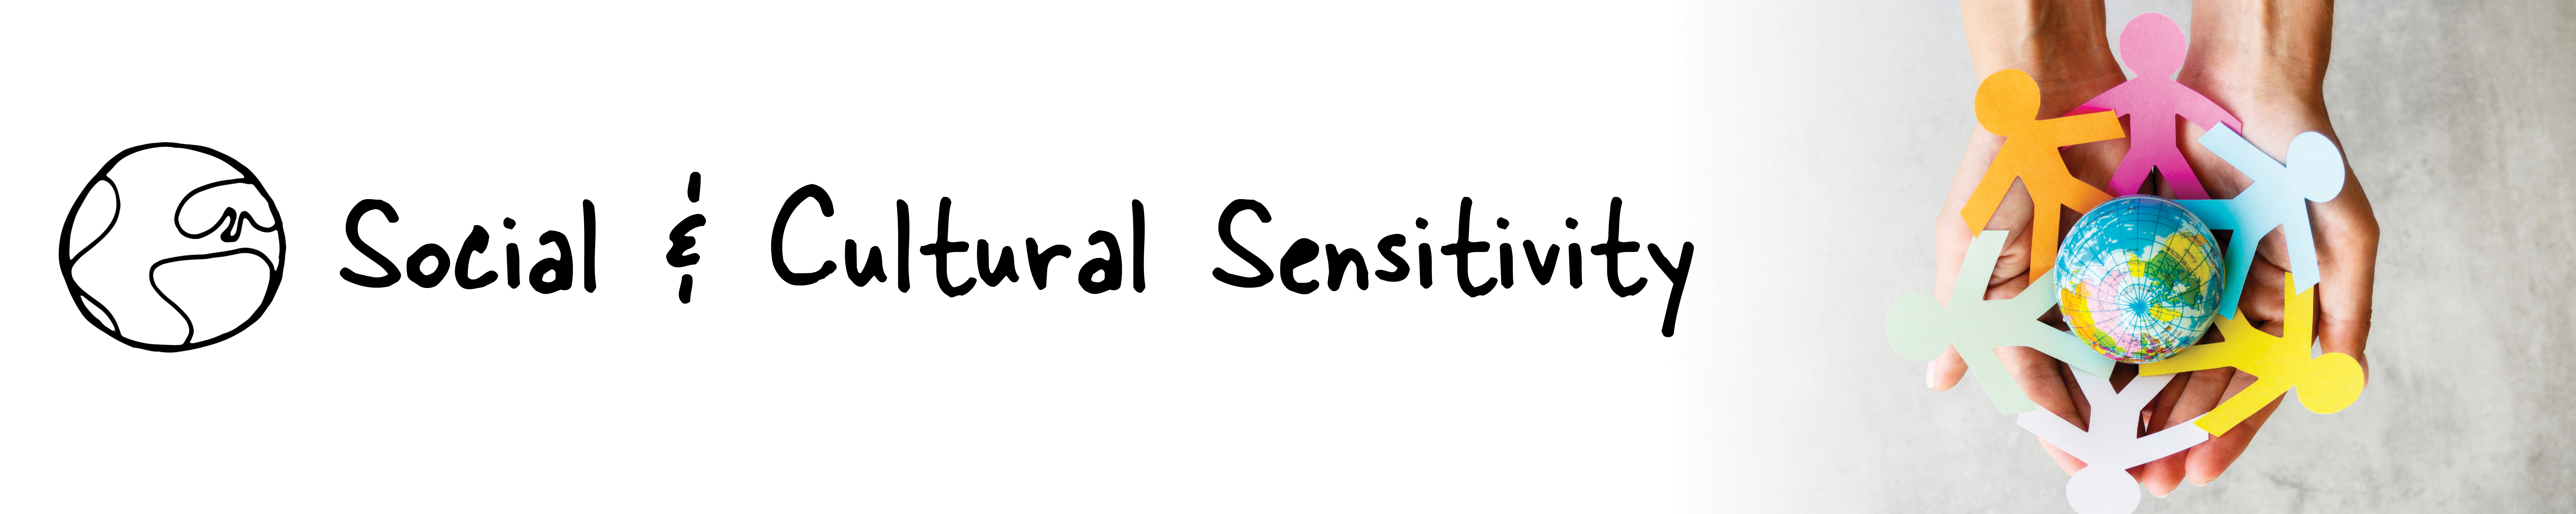 Social and Cultural Sensitivity